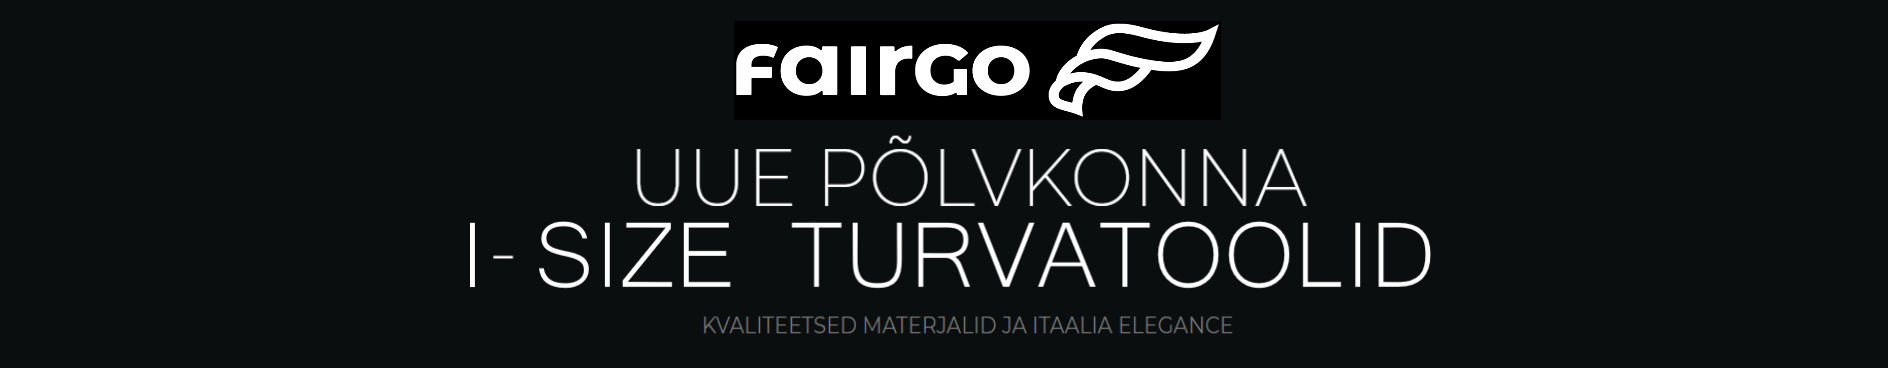 FAIRGO logo